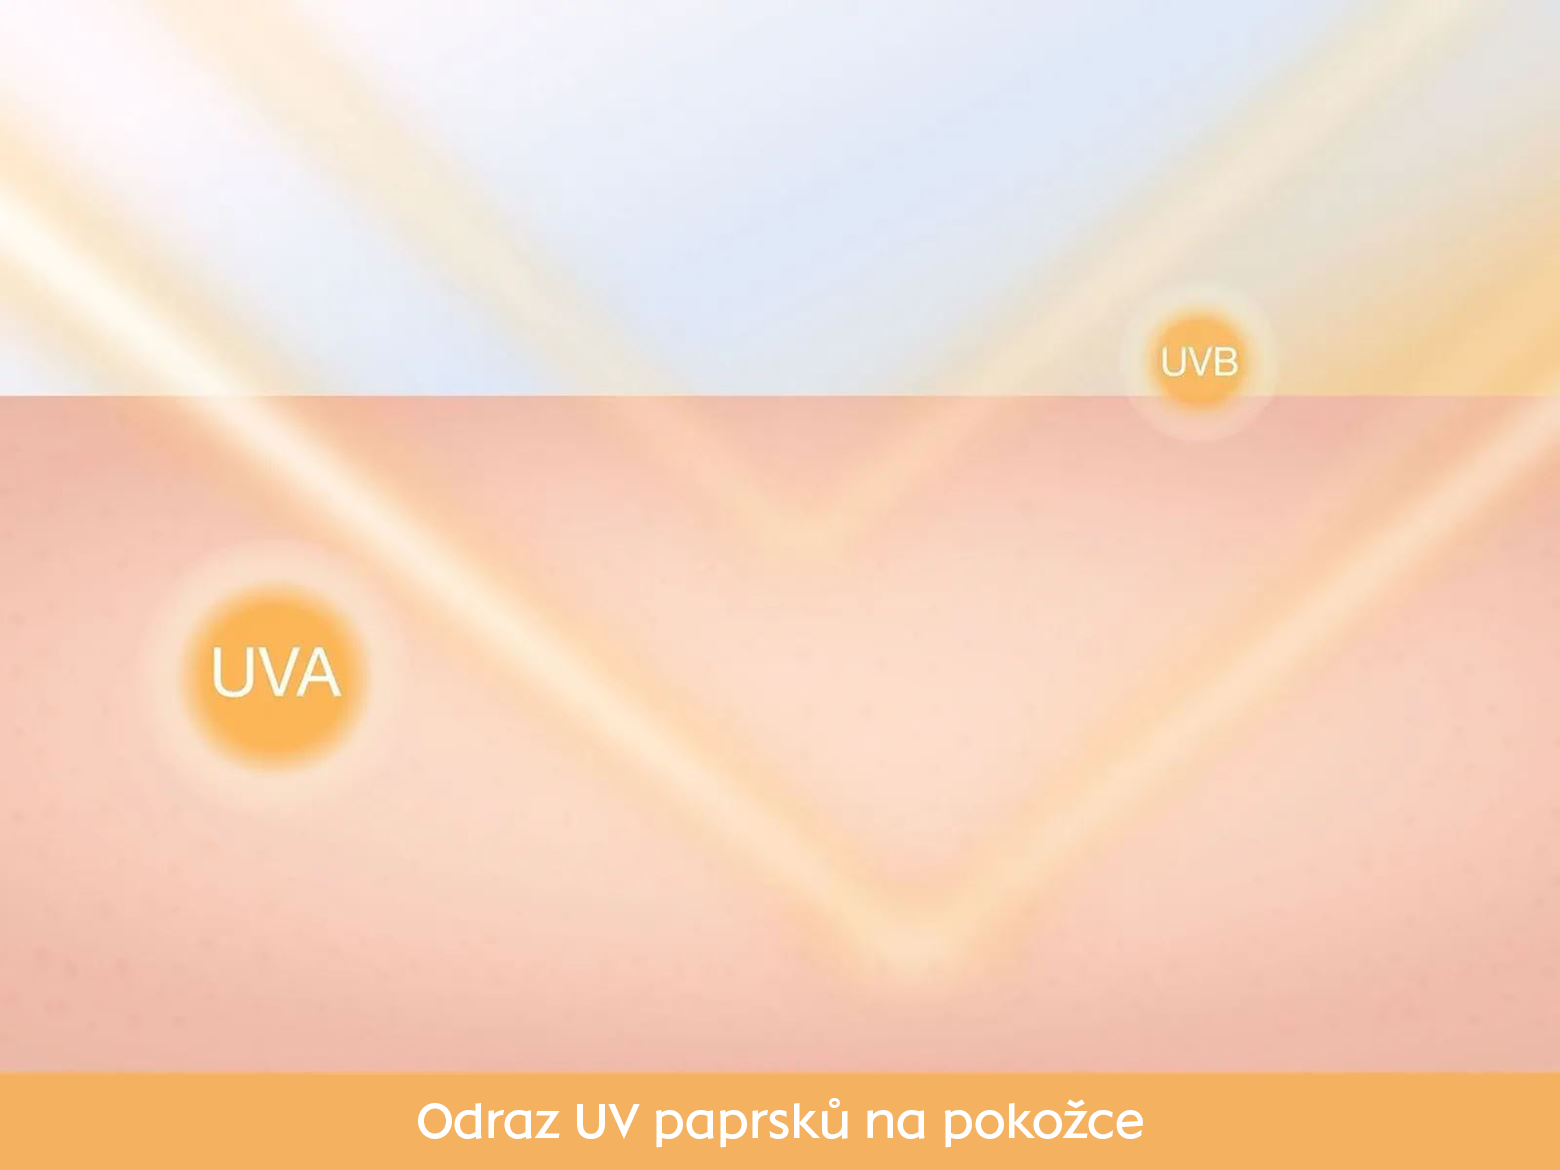 Odraz UV paprsků od pokožky